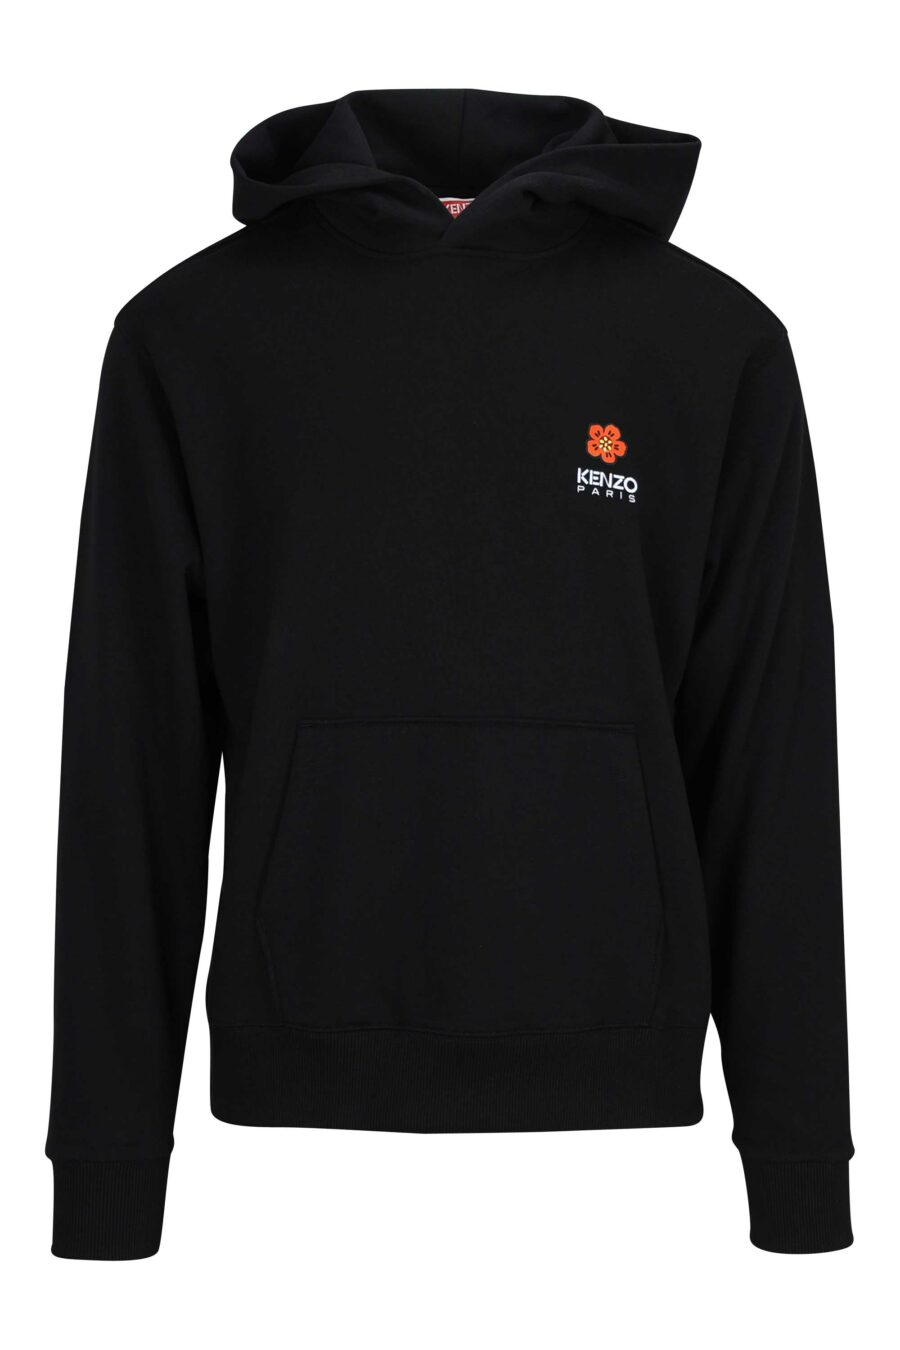 Black hooded sweatshirt with mini logo "boke flower" - 3612230469198